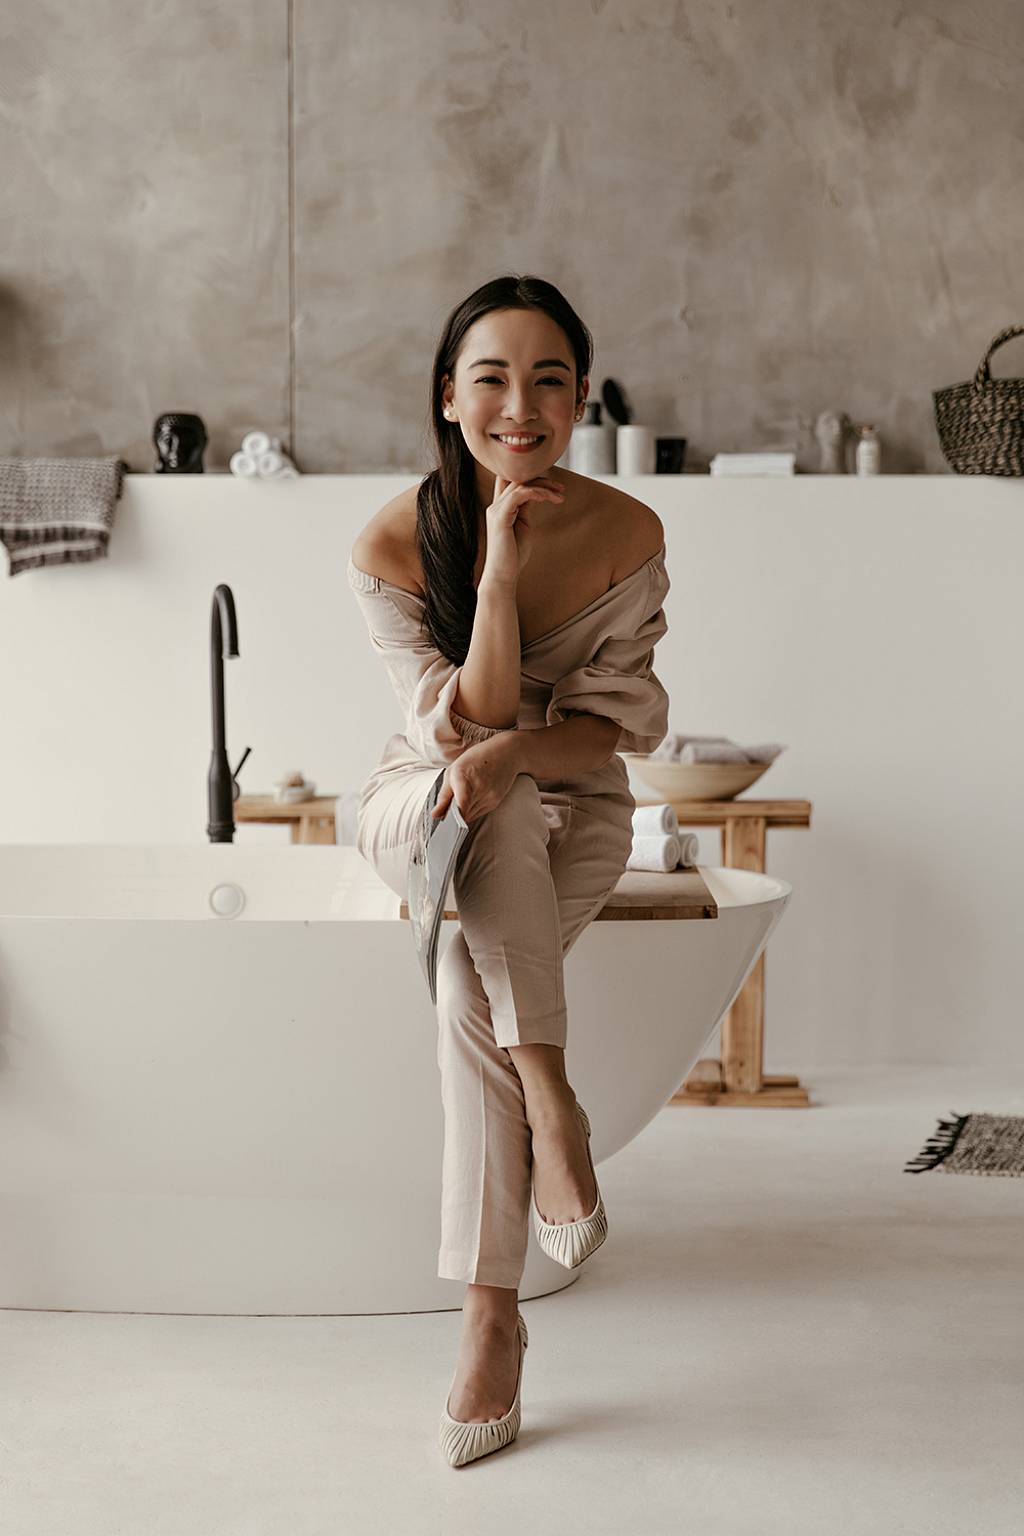 Junge Frau mit langen Haaren sitzt in einem beigen Kostüm auf dem Rand einer Badewanne und lächelt, das Kin auf Ihrer Hand aufgestützt, in die Kamera. Das Badezimmer selbst ist modern und schlicht eingerichtet.